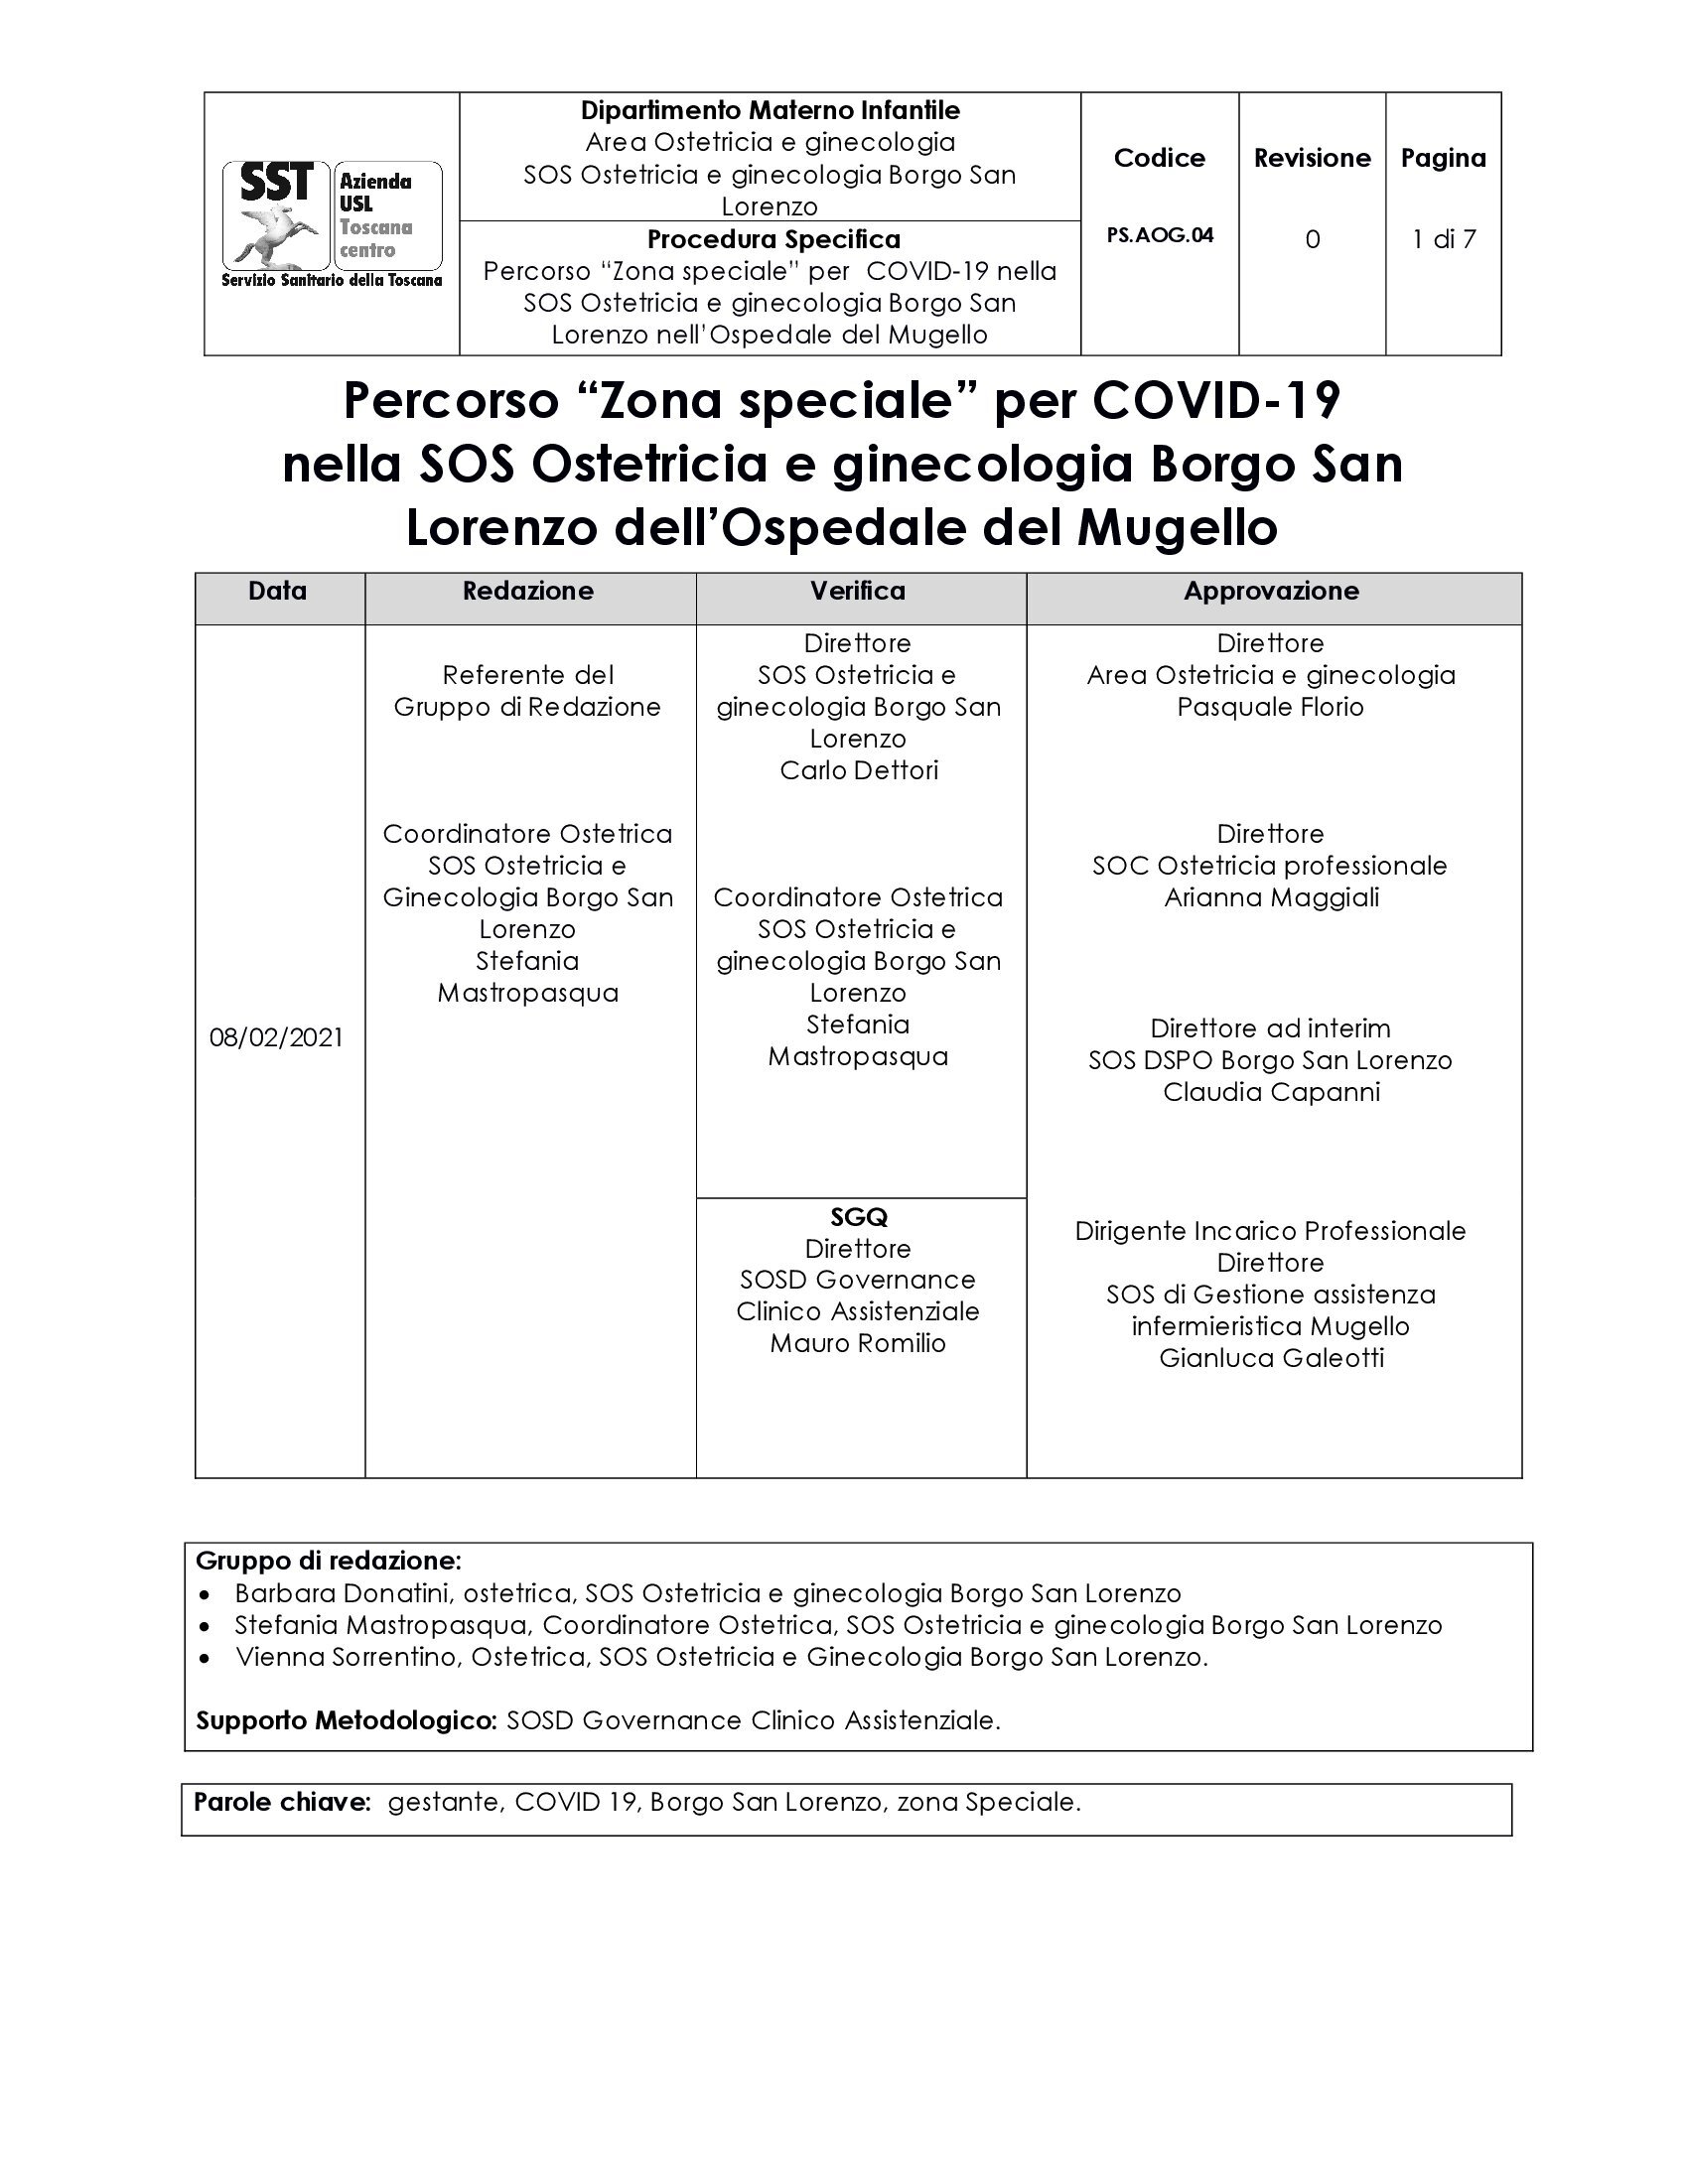 PS.AOG.04 Percorso “Zona speciale” per COVID-19 nella SOS Ostetricia e ginecologia Borgo San Lorenzo nell’Ospedale del Mugello